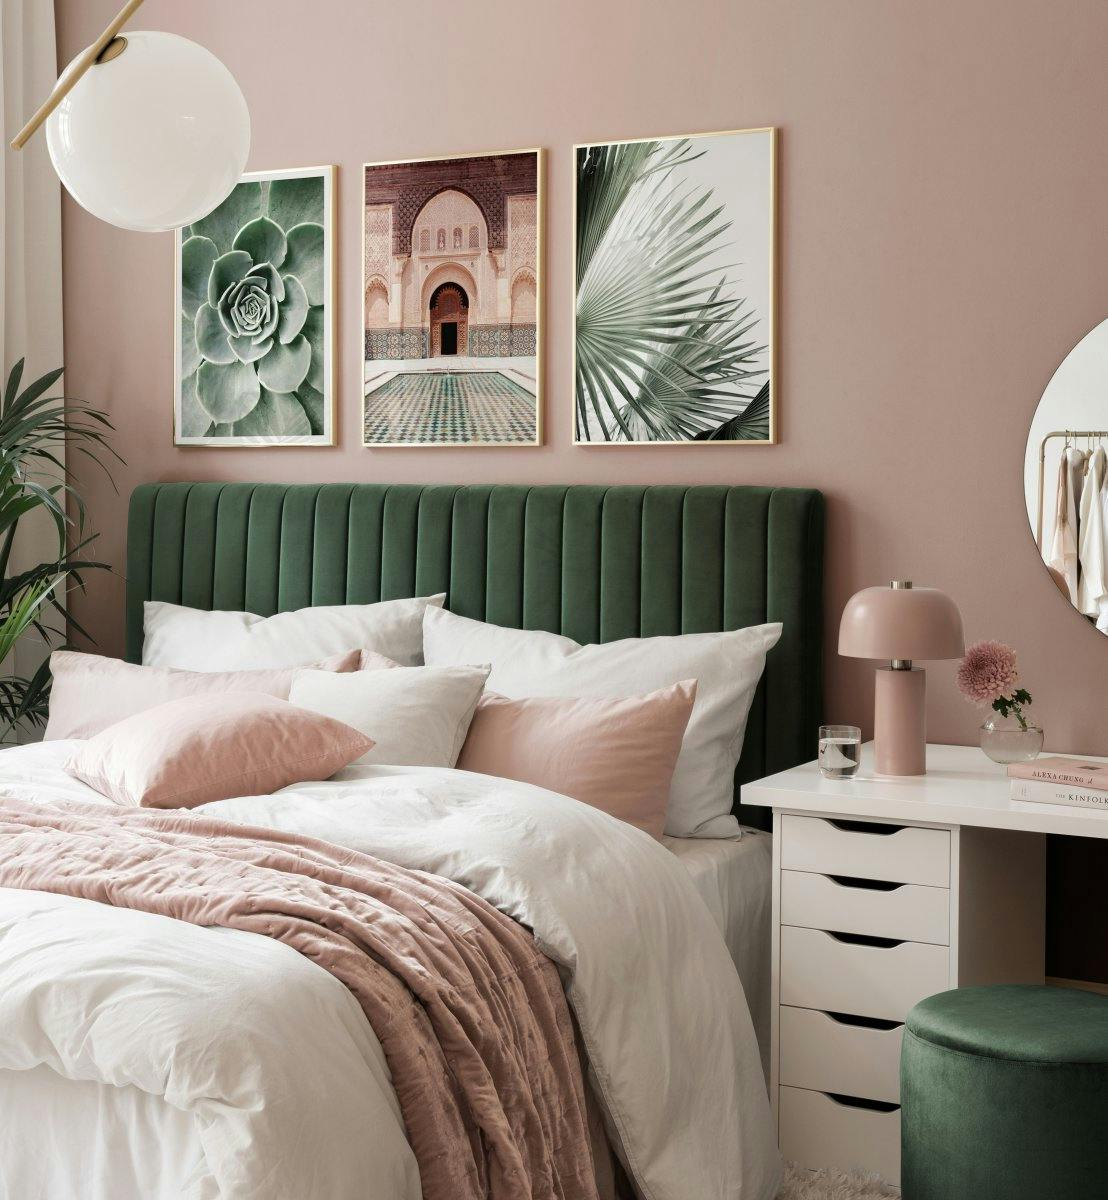 Fotografien von Blättern und Architektur in Grün und Beige für Schlafzimmer